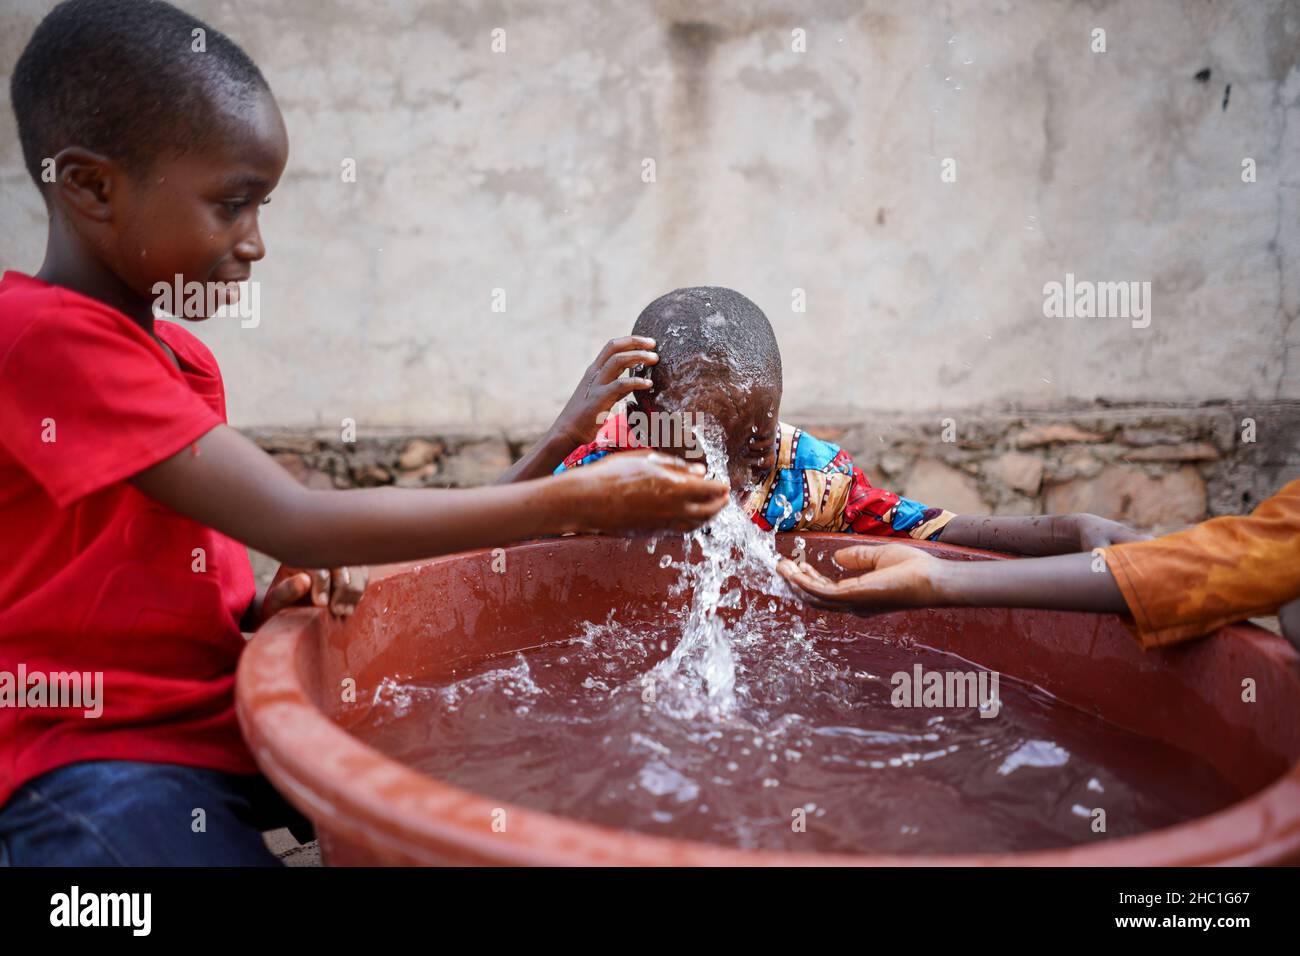 Trois petits garçons africains noirs intelligents ayant un bon moment barboter autour avec de l'eau fraîche contenue dans un grand bac en plastique Banque D'Images